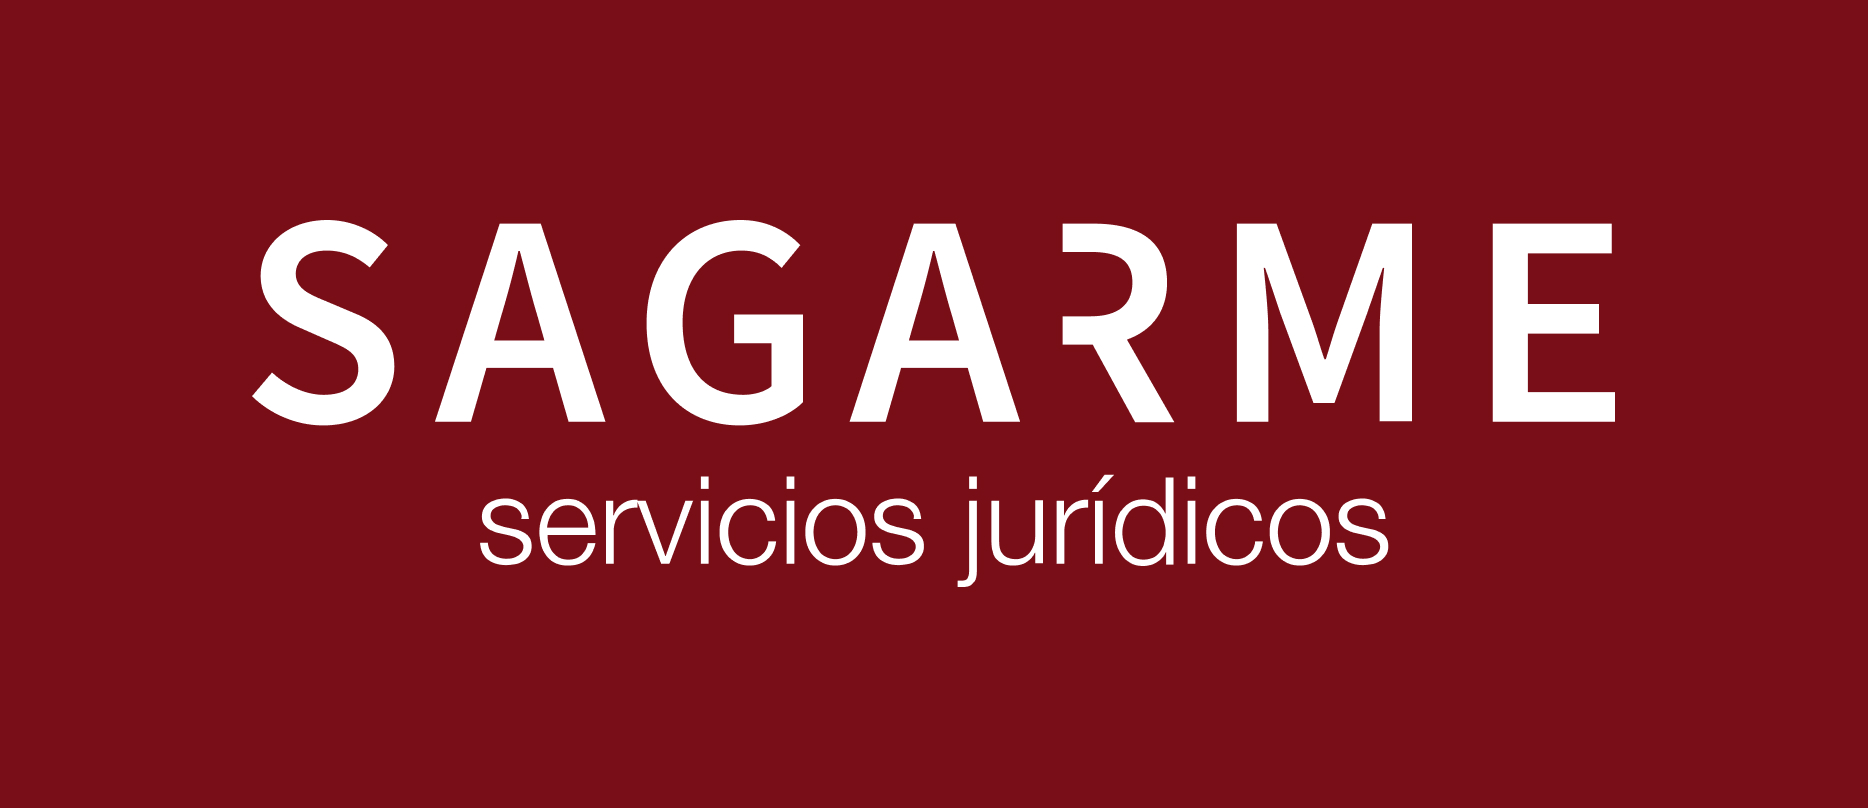 Sagarme Servicios Jur\u00EDdicos - Servicios jurídicos